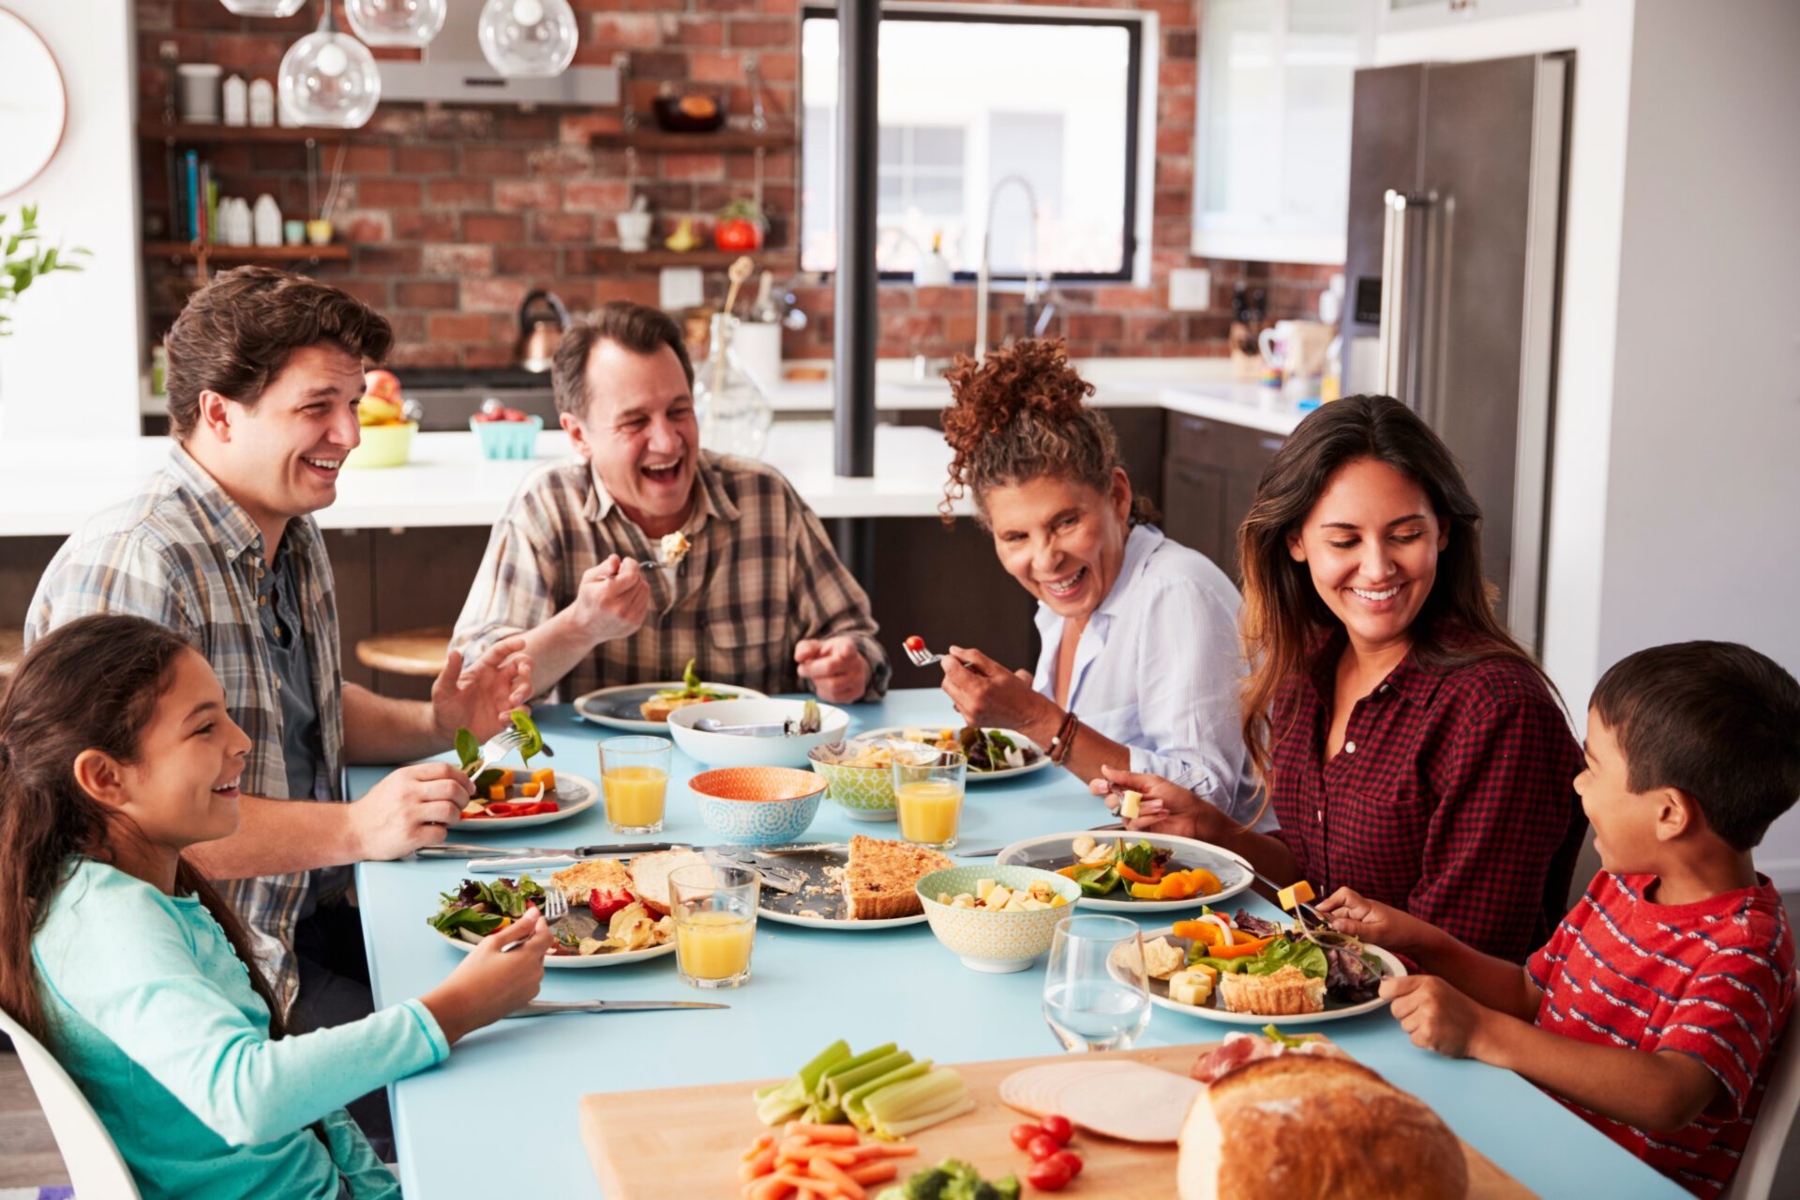 Υγιεινό δείπνο: Πώς να σερβίρετε ένα υγιεινό και θρεπτικό οικογενειακό γεύμα;